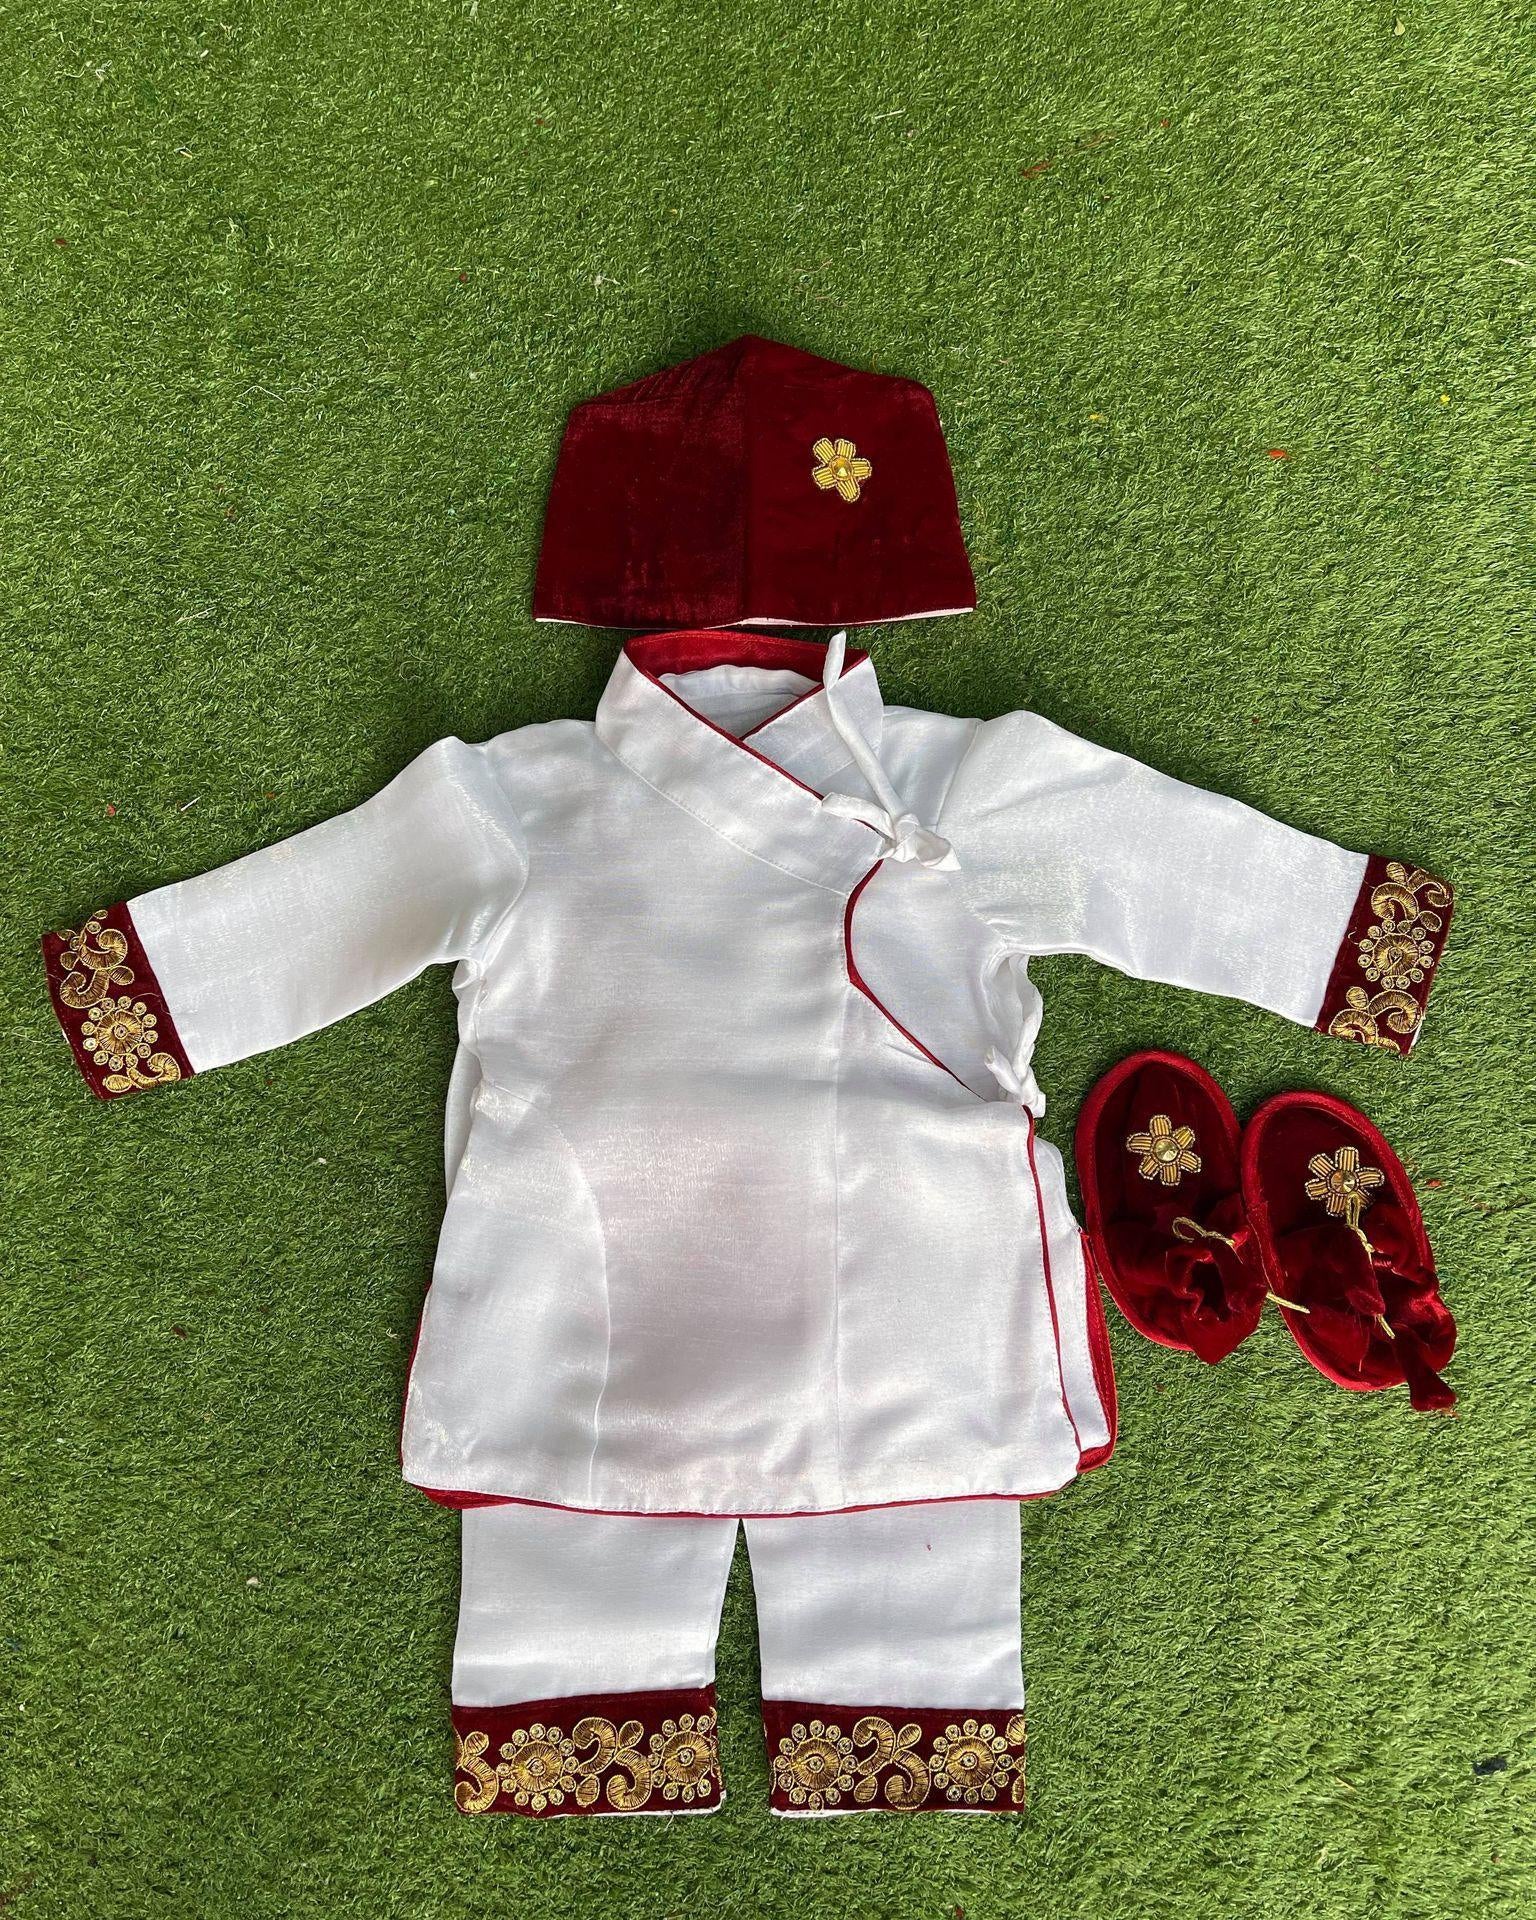 Pasni Baby Boy Handwork Coat Set In Maroon